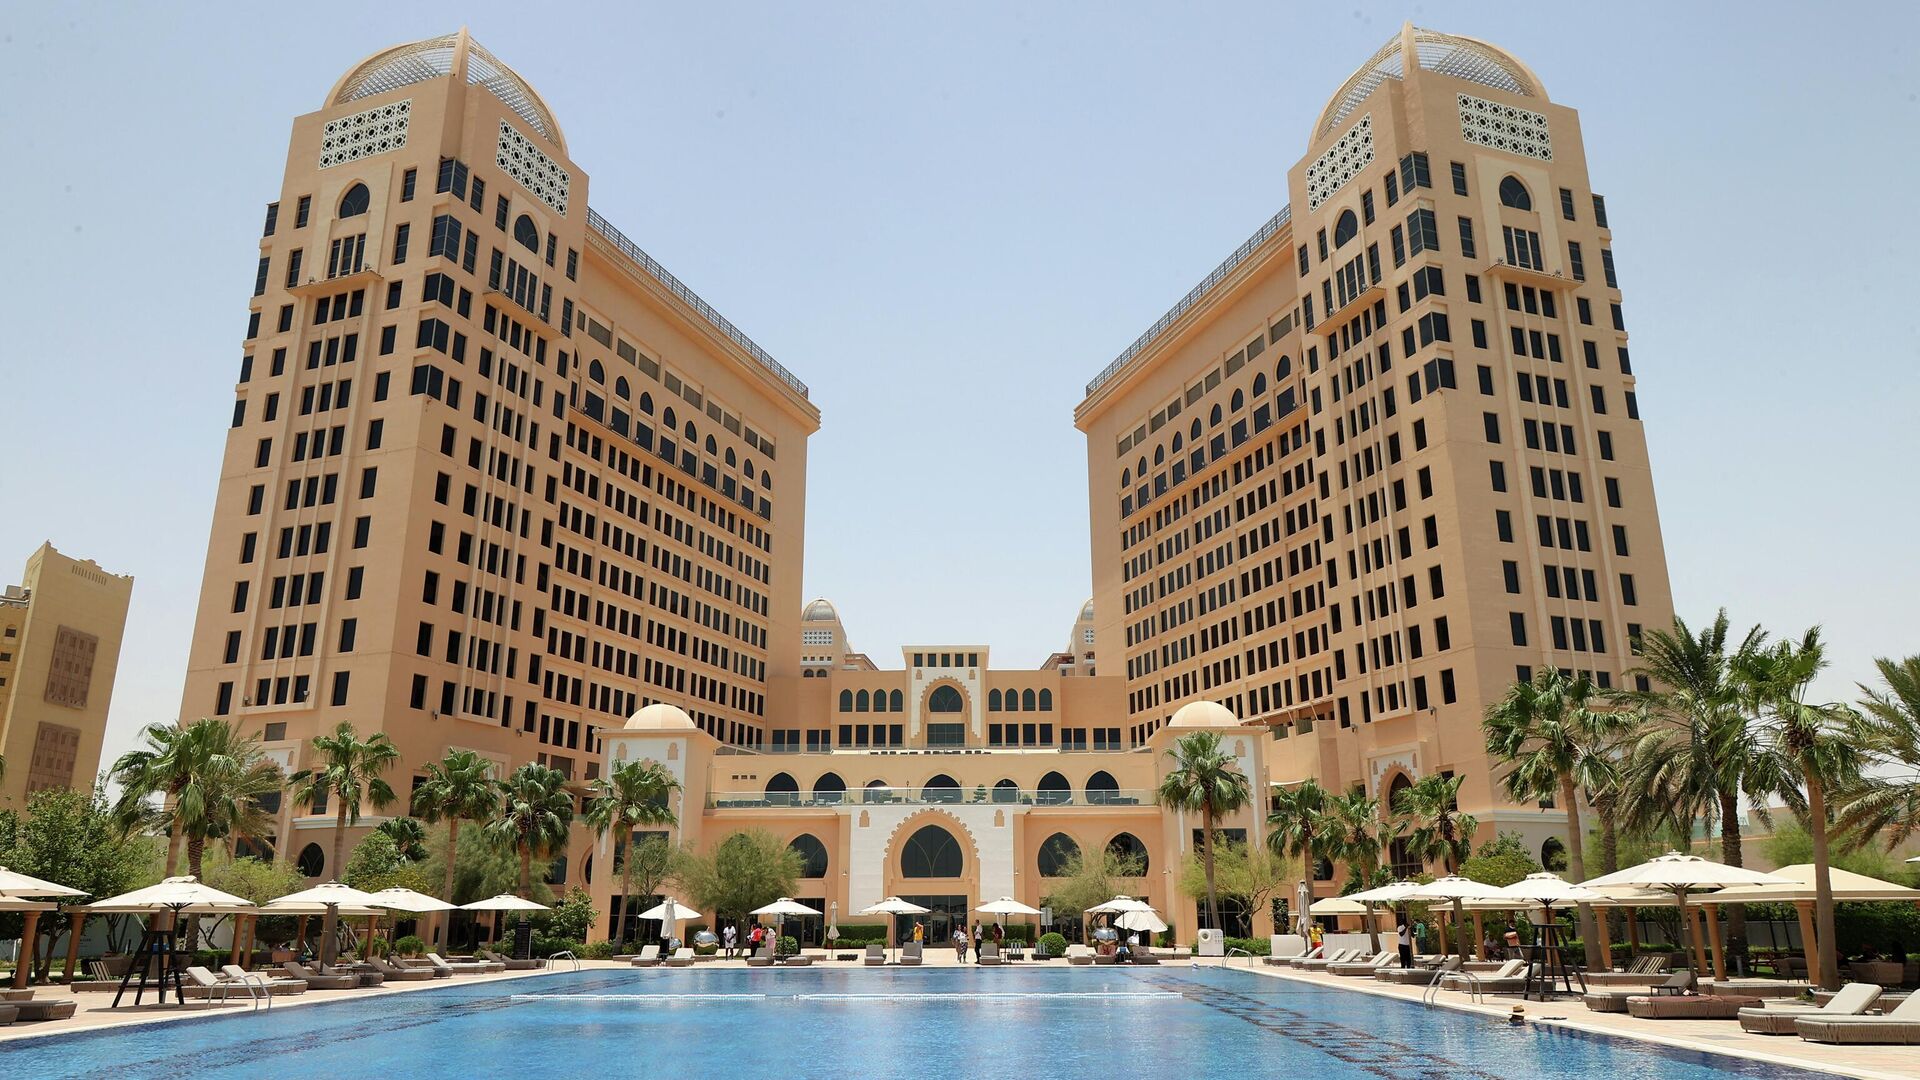 فندق سانت ريجيس (St Regis) في الدوحة، قطر،  30 مايو 2022. - سبوتنيك عربي, 1920, 30.06.2022